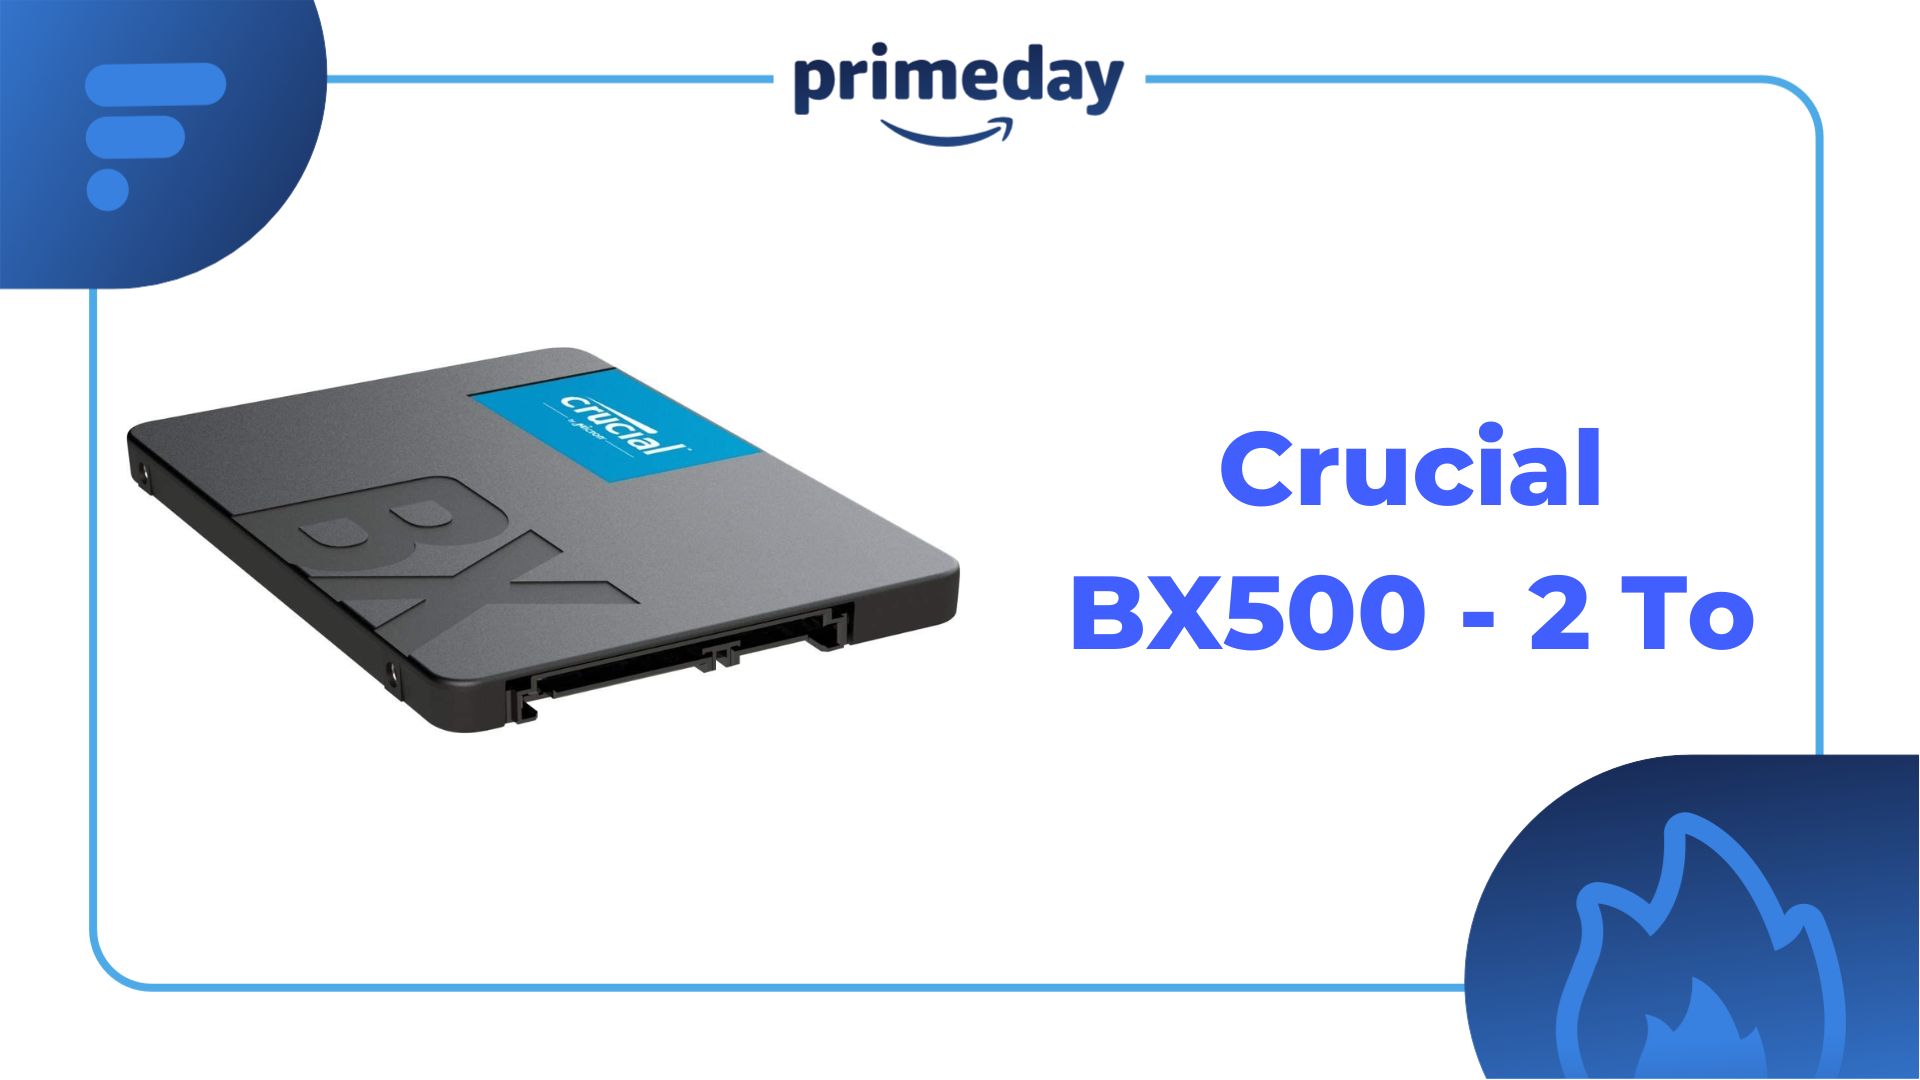 Ce SSD de Crucial possède un excellent rapport qualité prix en